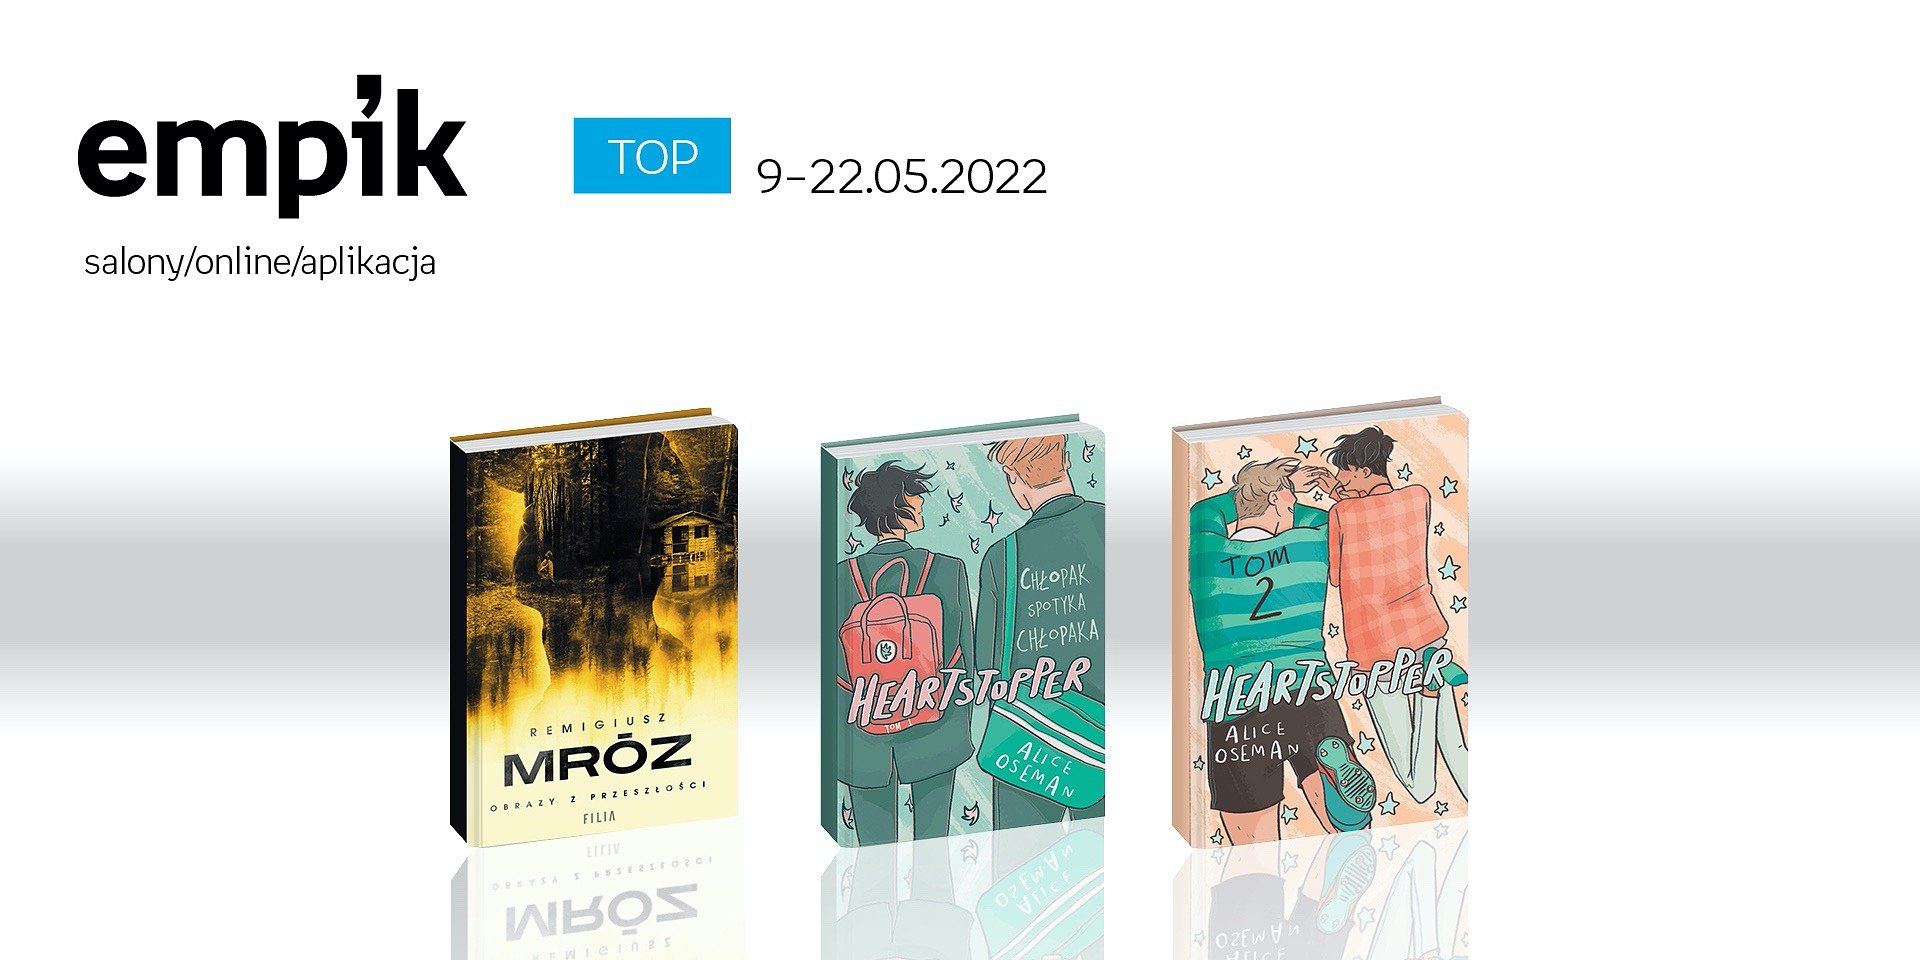 Książkowe listy bestsellerów w Empiku za okres 9-22 maja 2022 r.